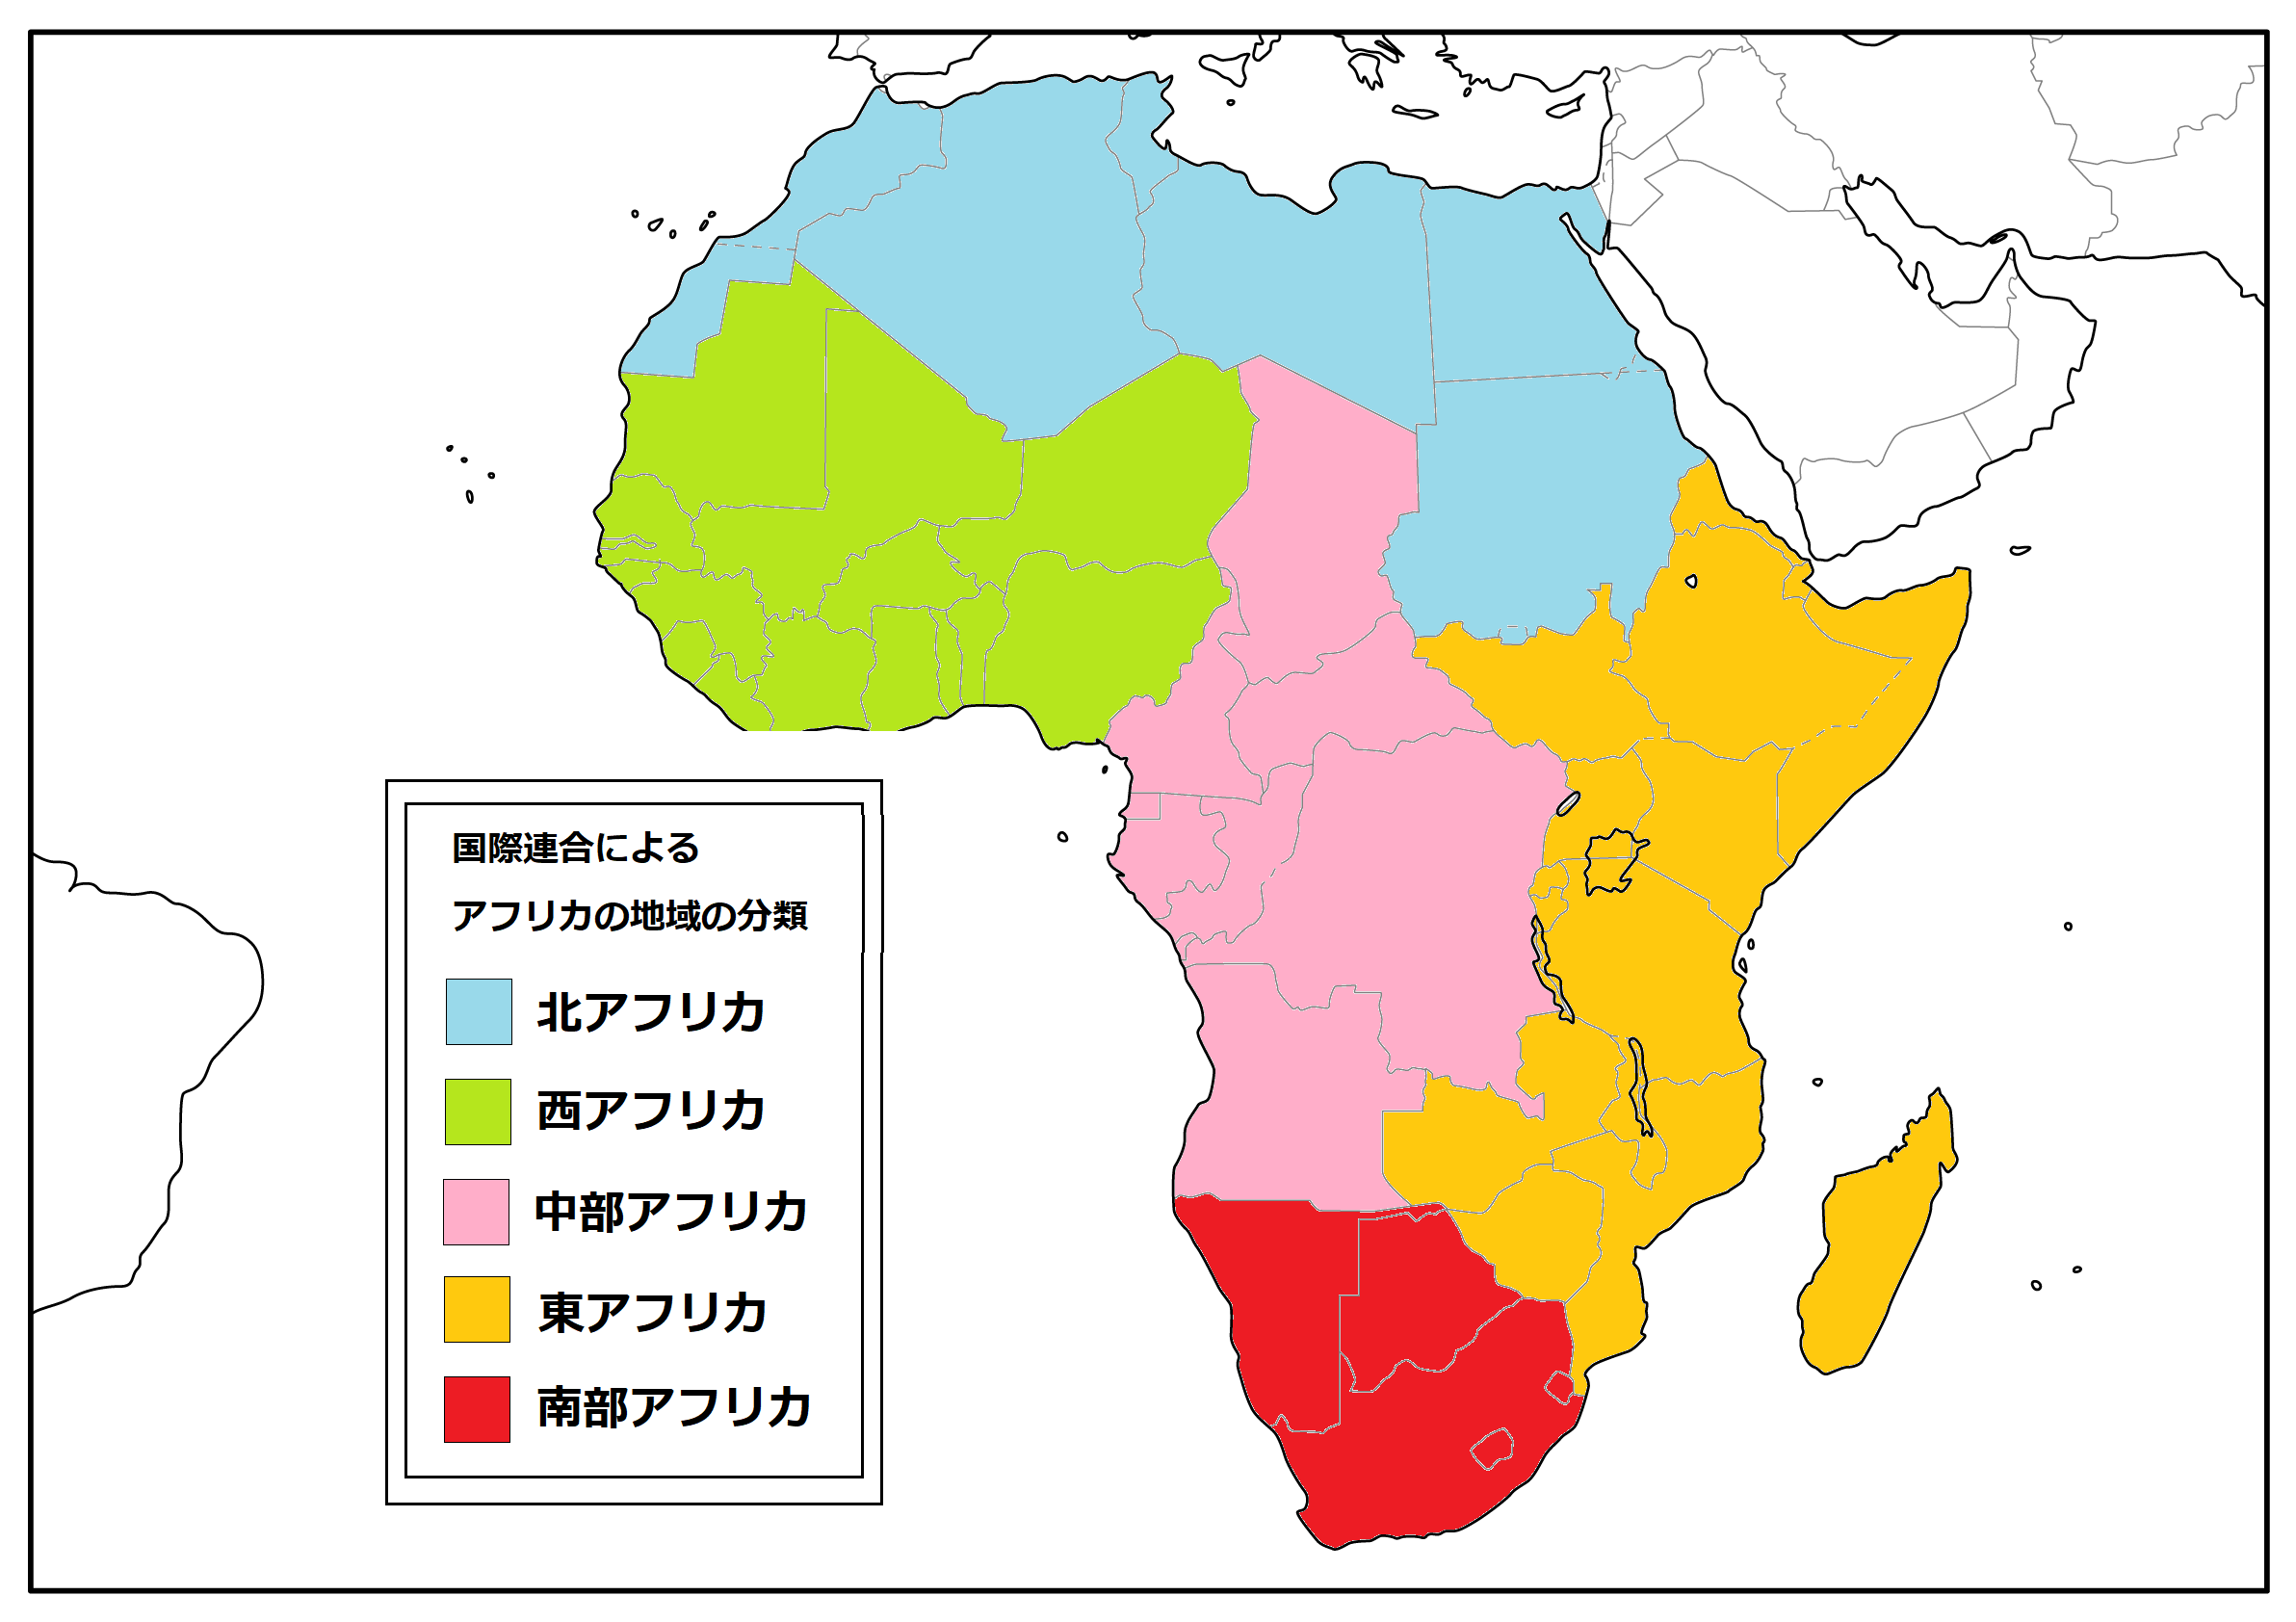 africa-irowake